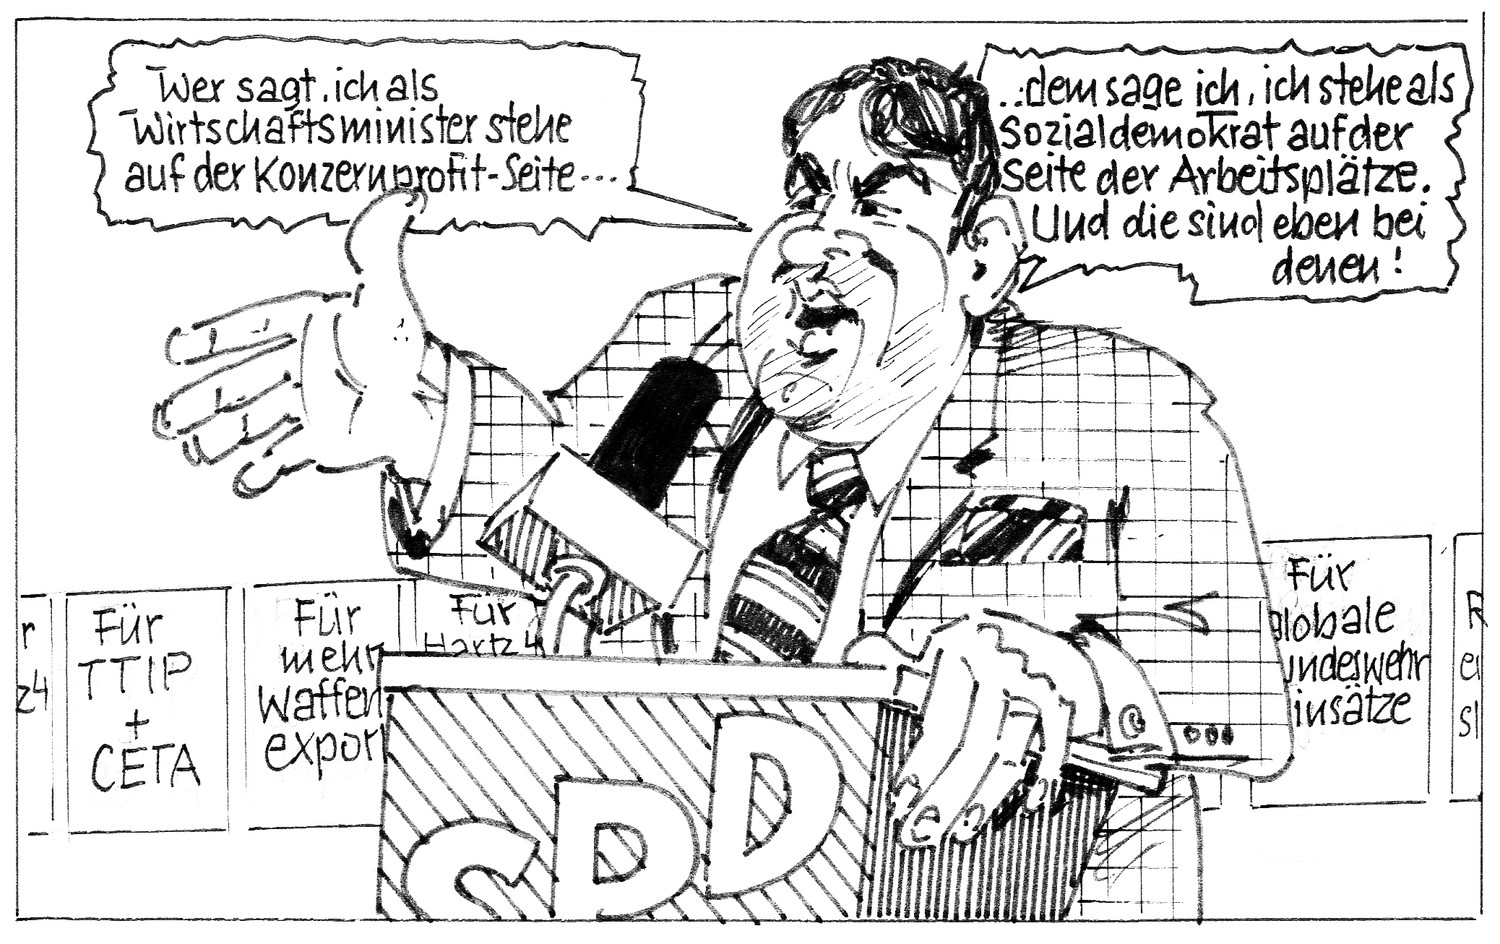 bernd buecking 36 - Bernd Bücking - Karikatur der Woche, Vermischtes - Politik